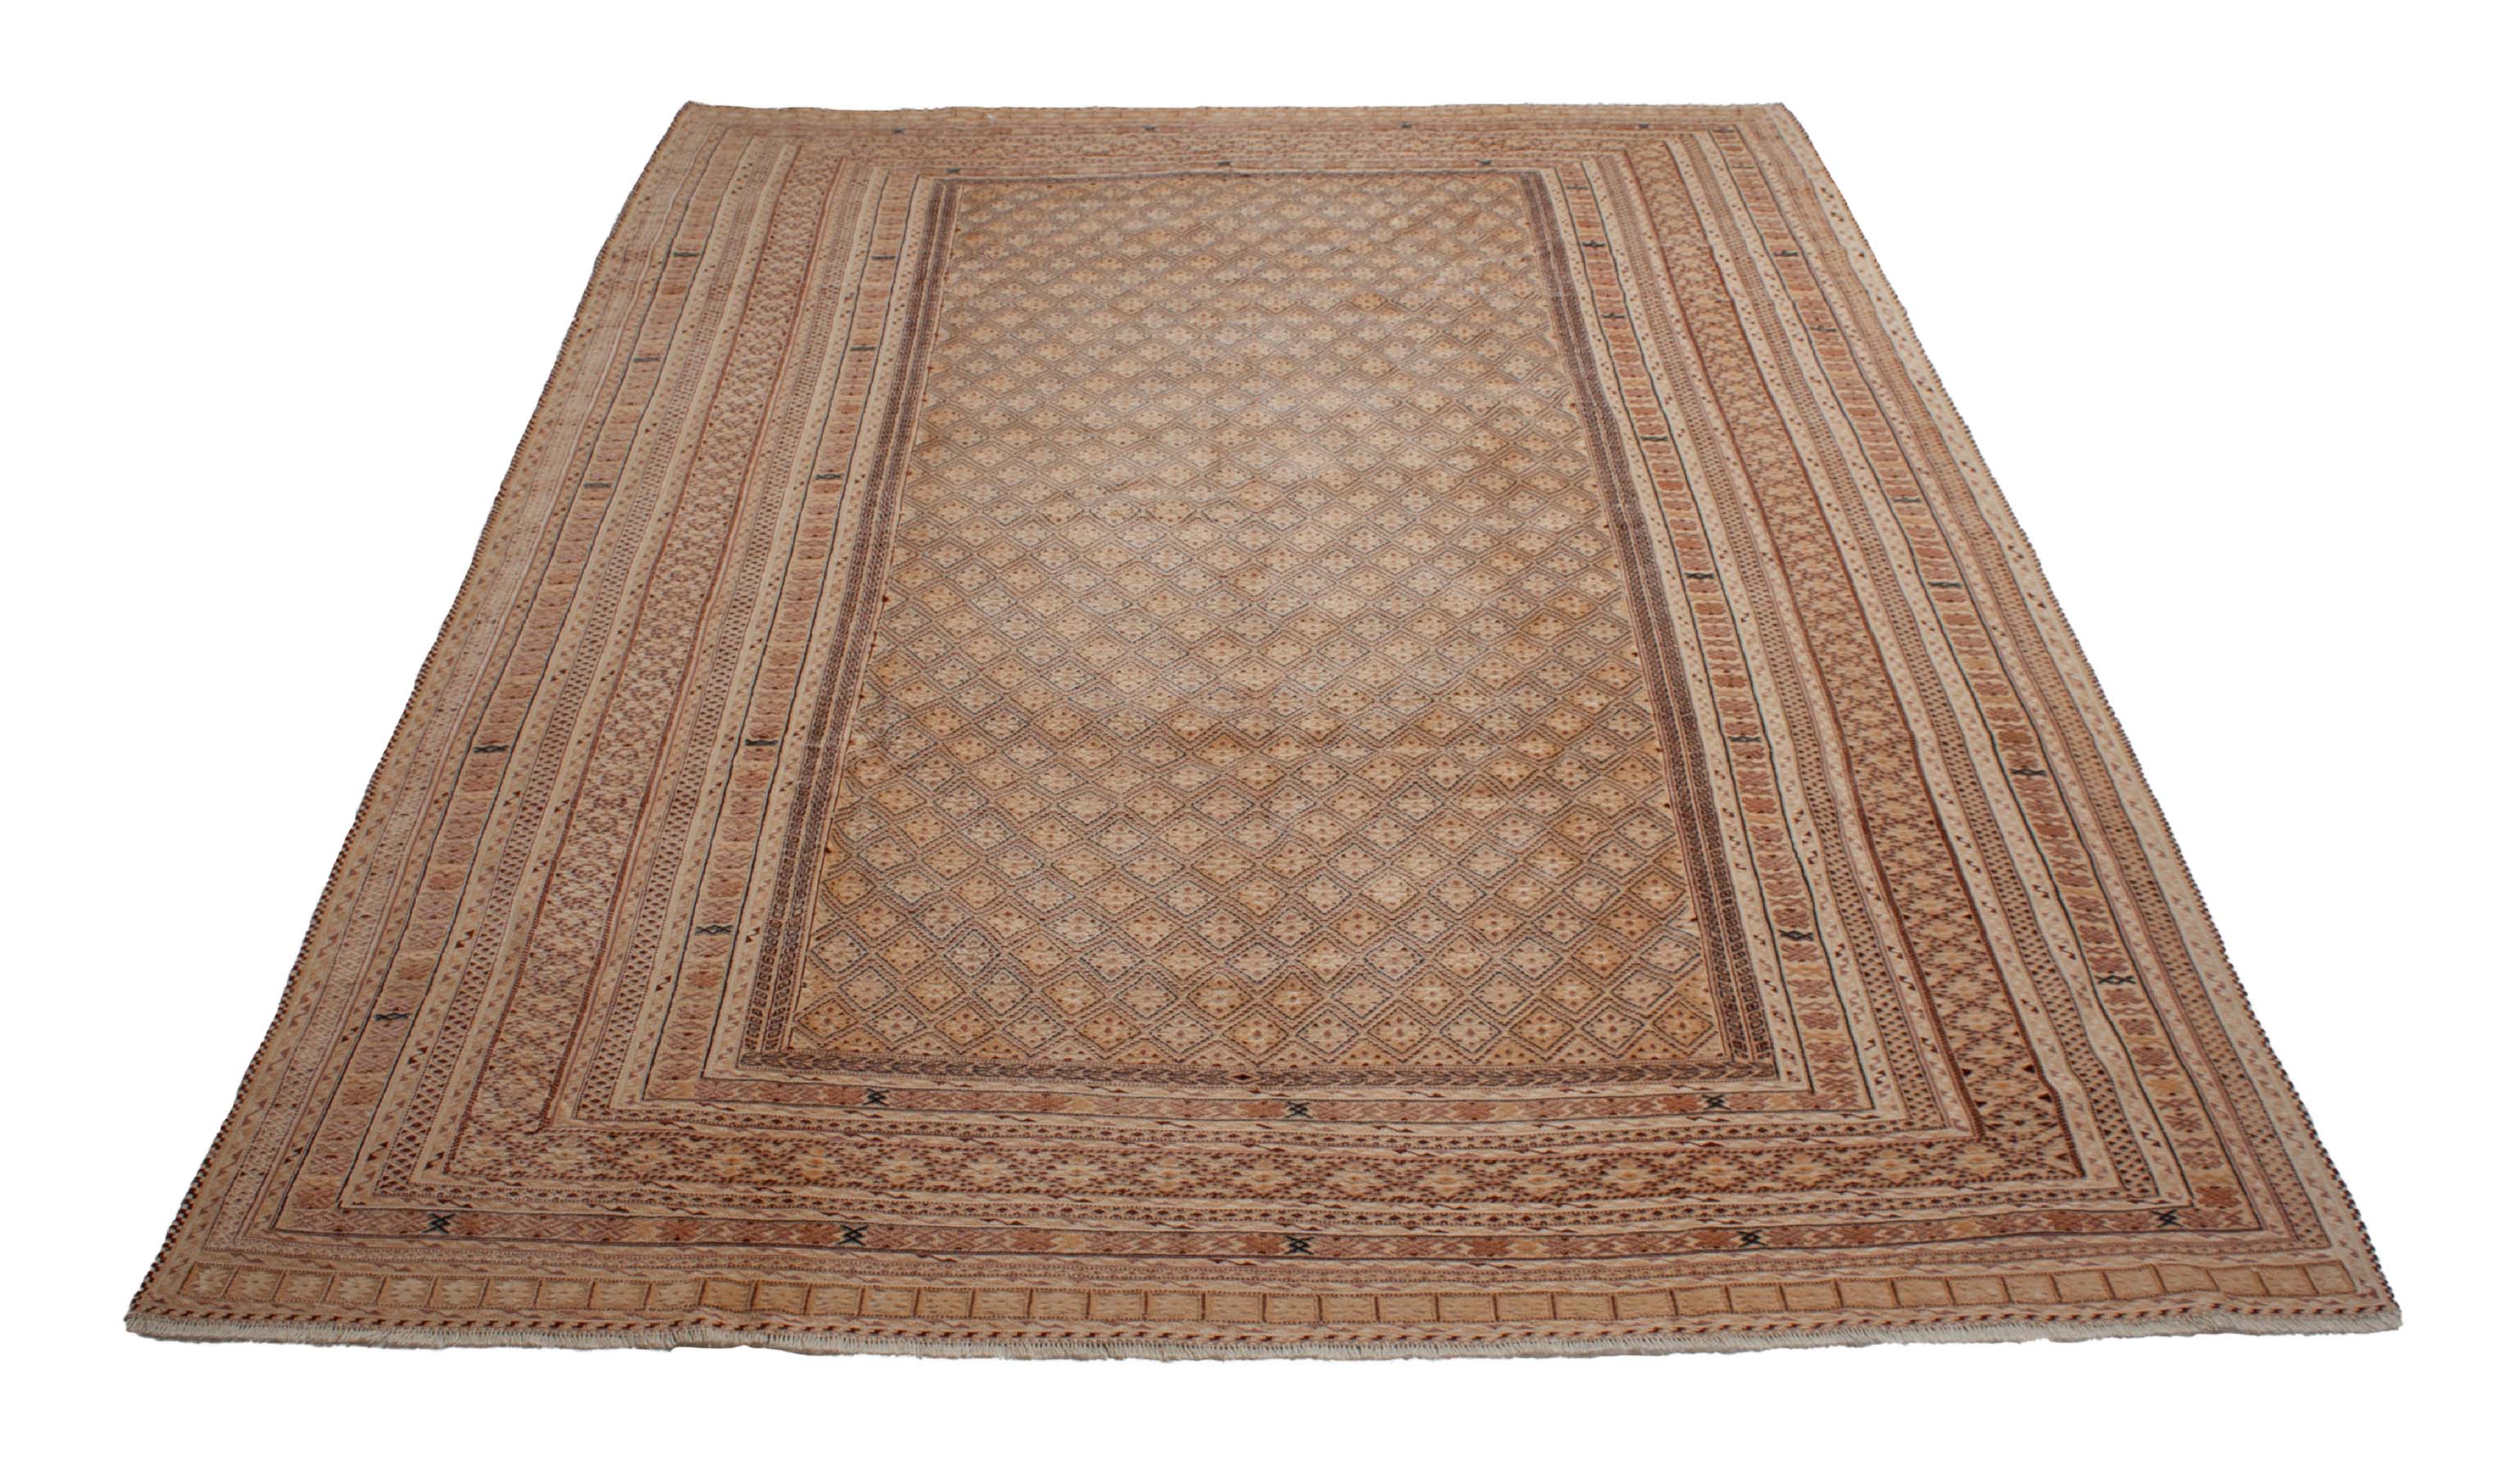 Eine Fotoaufnahme eines Nakhunak Teppichs.